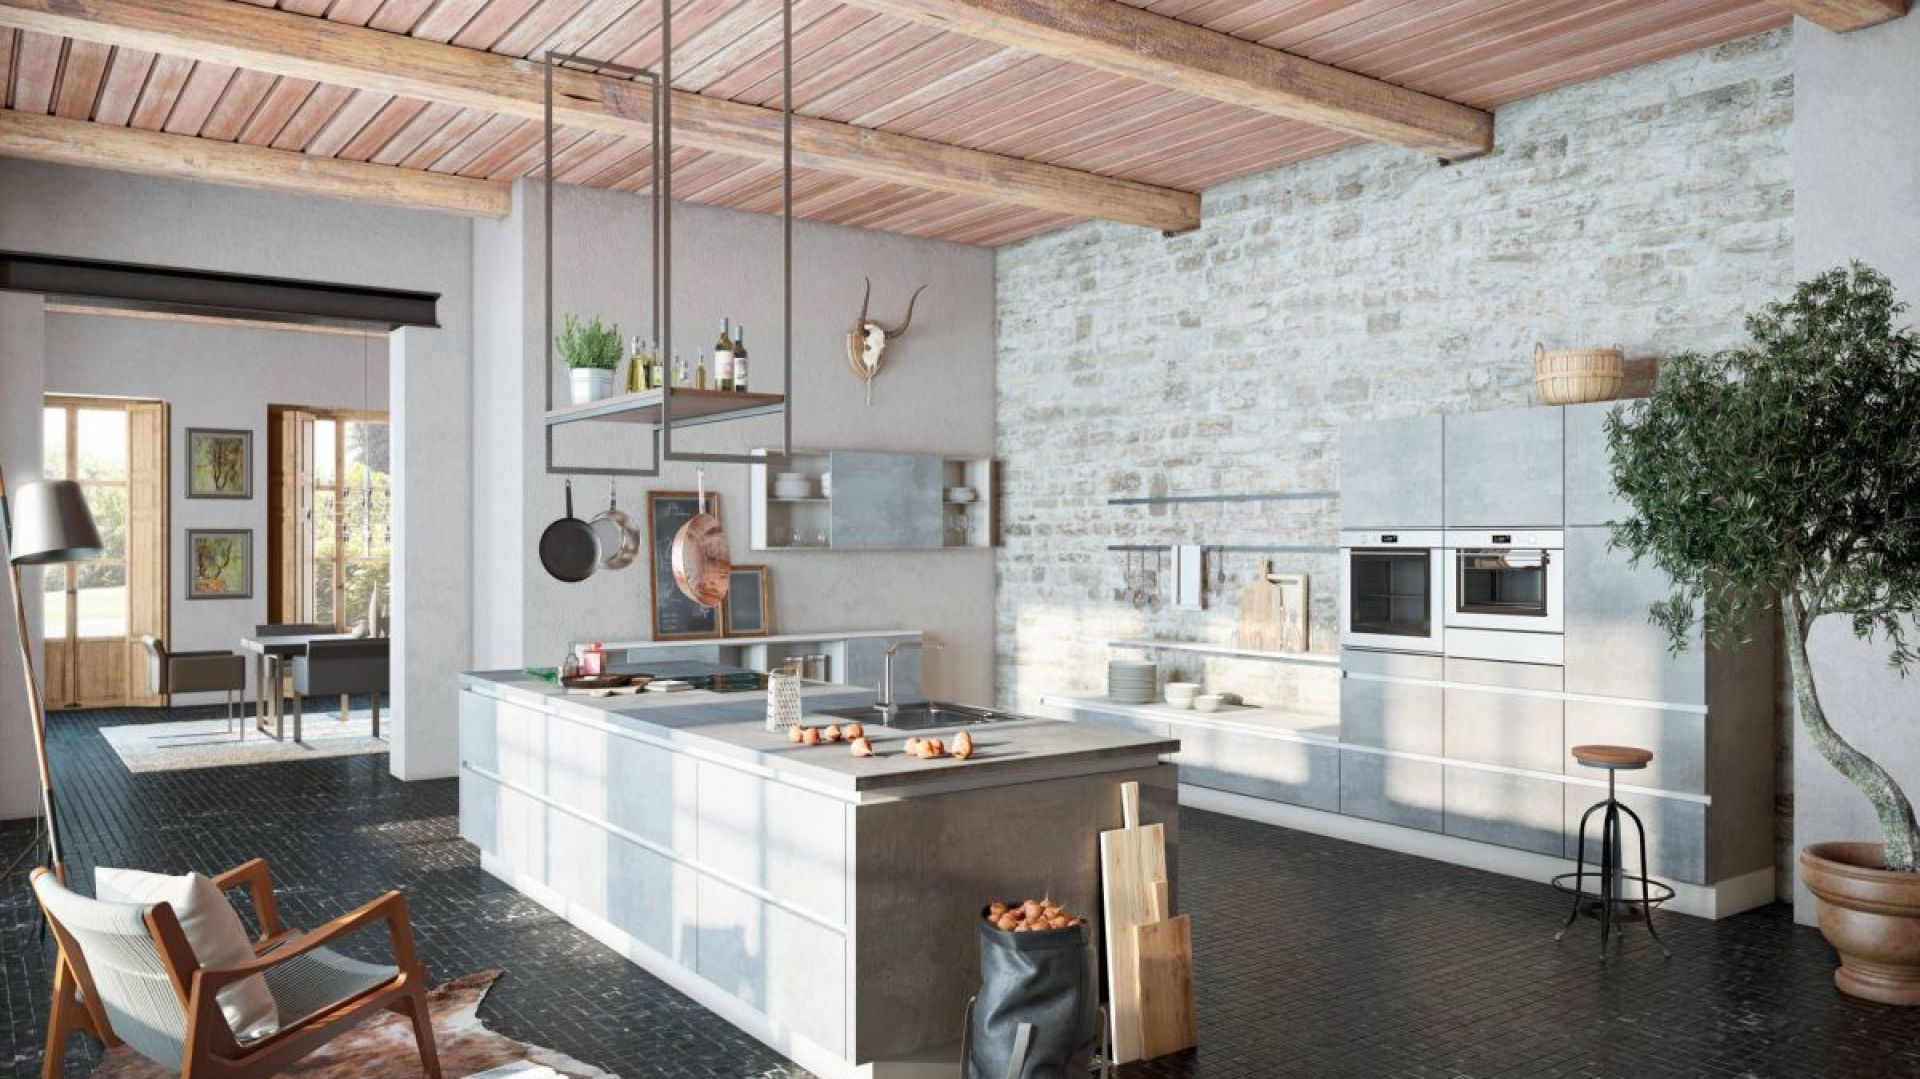 Kamień, drewno, metal i beton – kuchnia w stylu loft